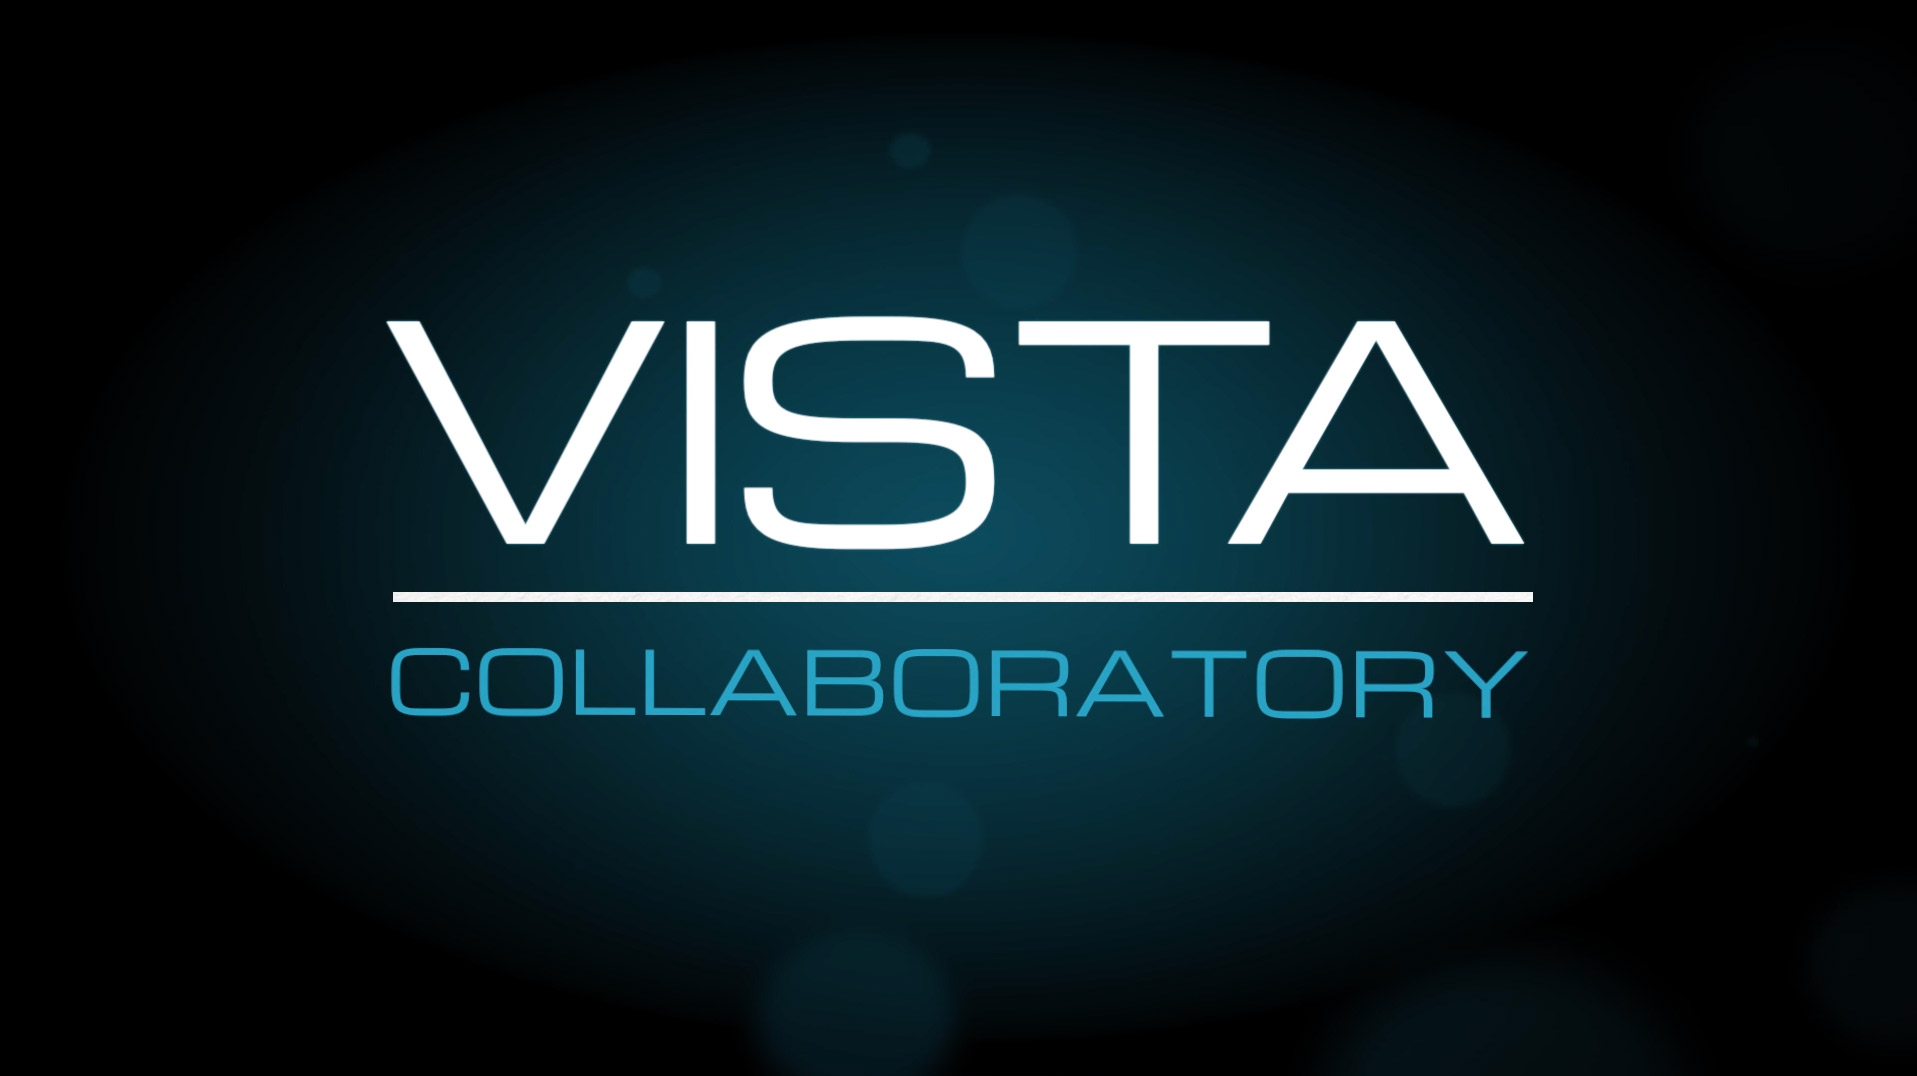 VISTA Collaboratory Promo Still